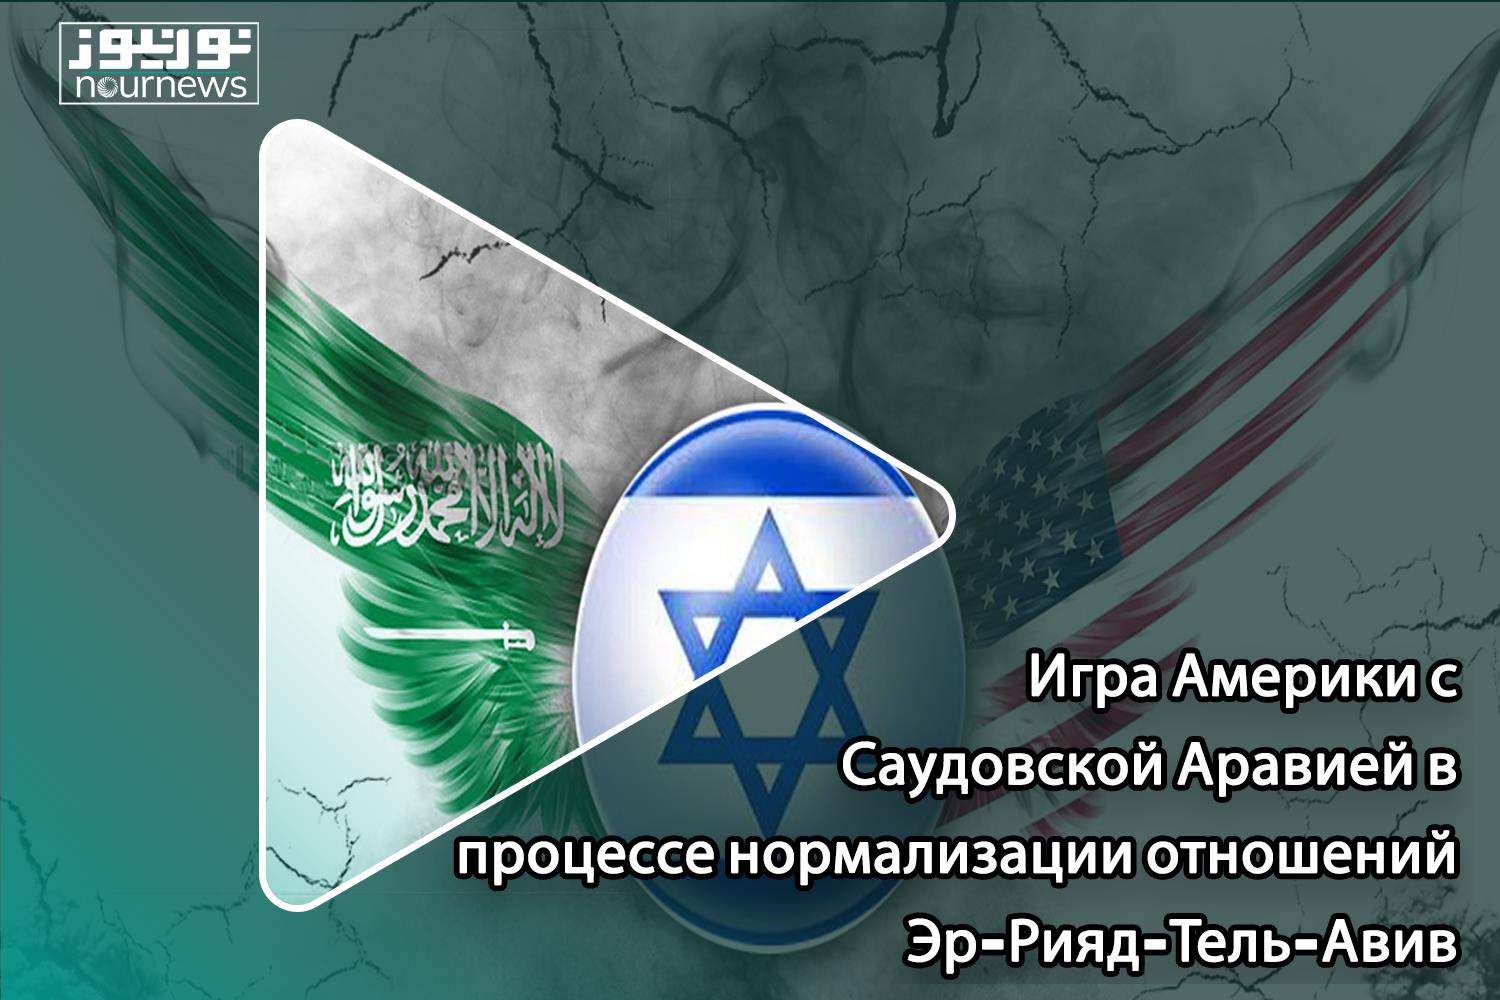 Игра Америки с Саудовской Аравией в процессе нормализации отношений Эр-Рияд-Тель-Авив